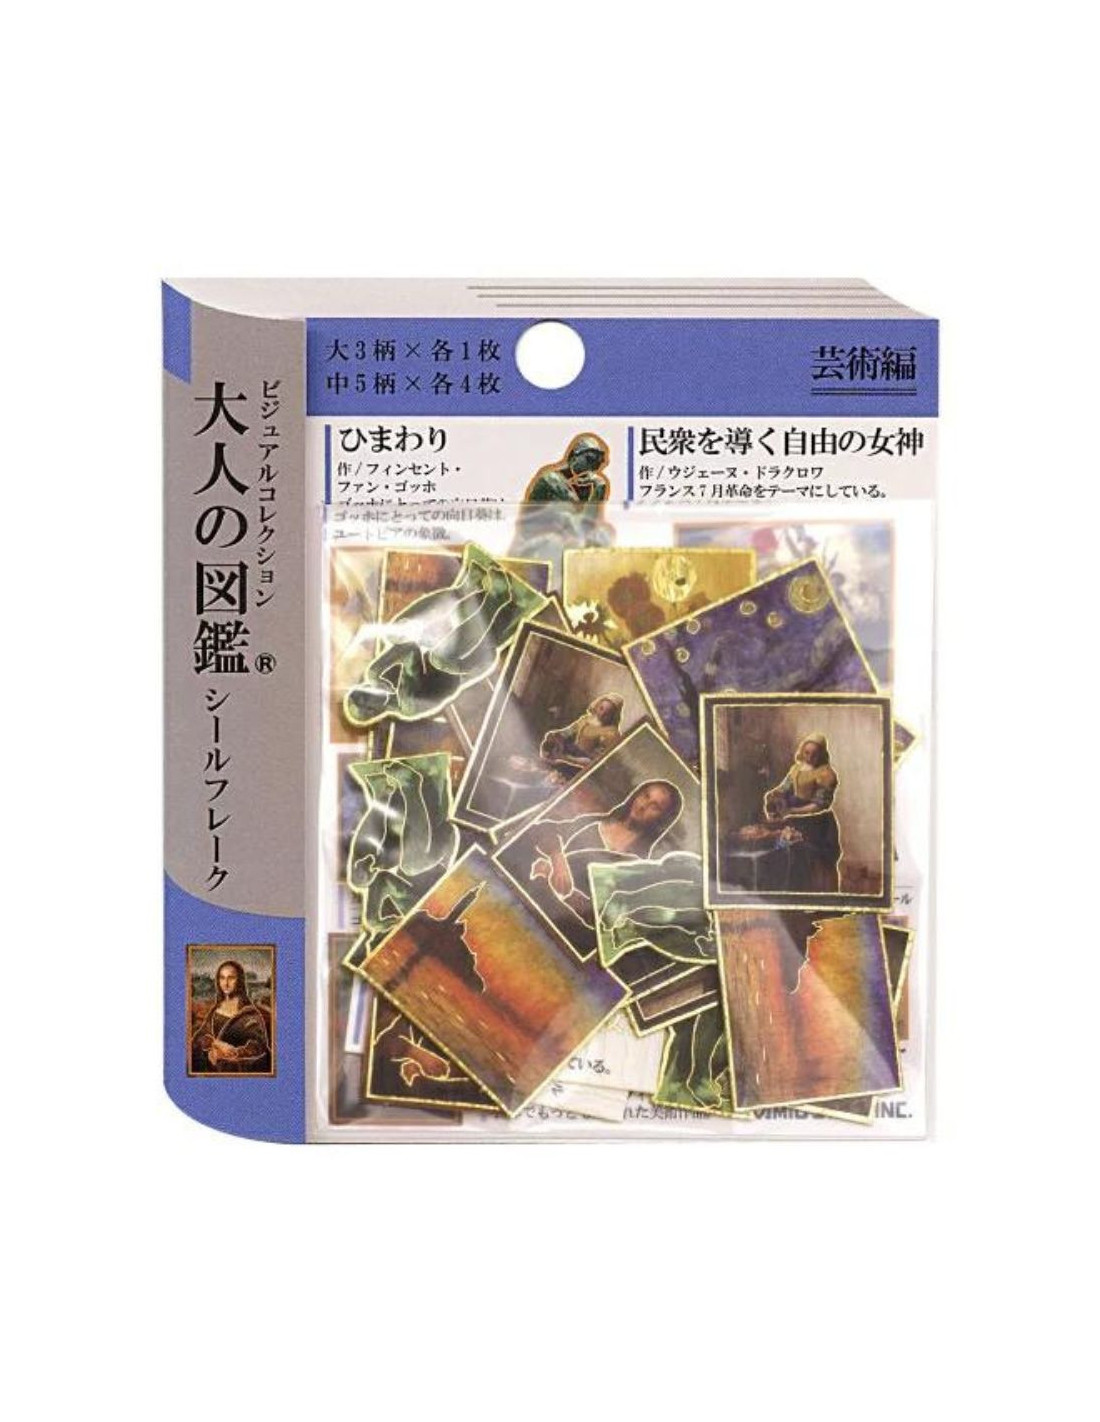 Otonano-zukan Flake Stickers - Works of Art - Kamio Japan